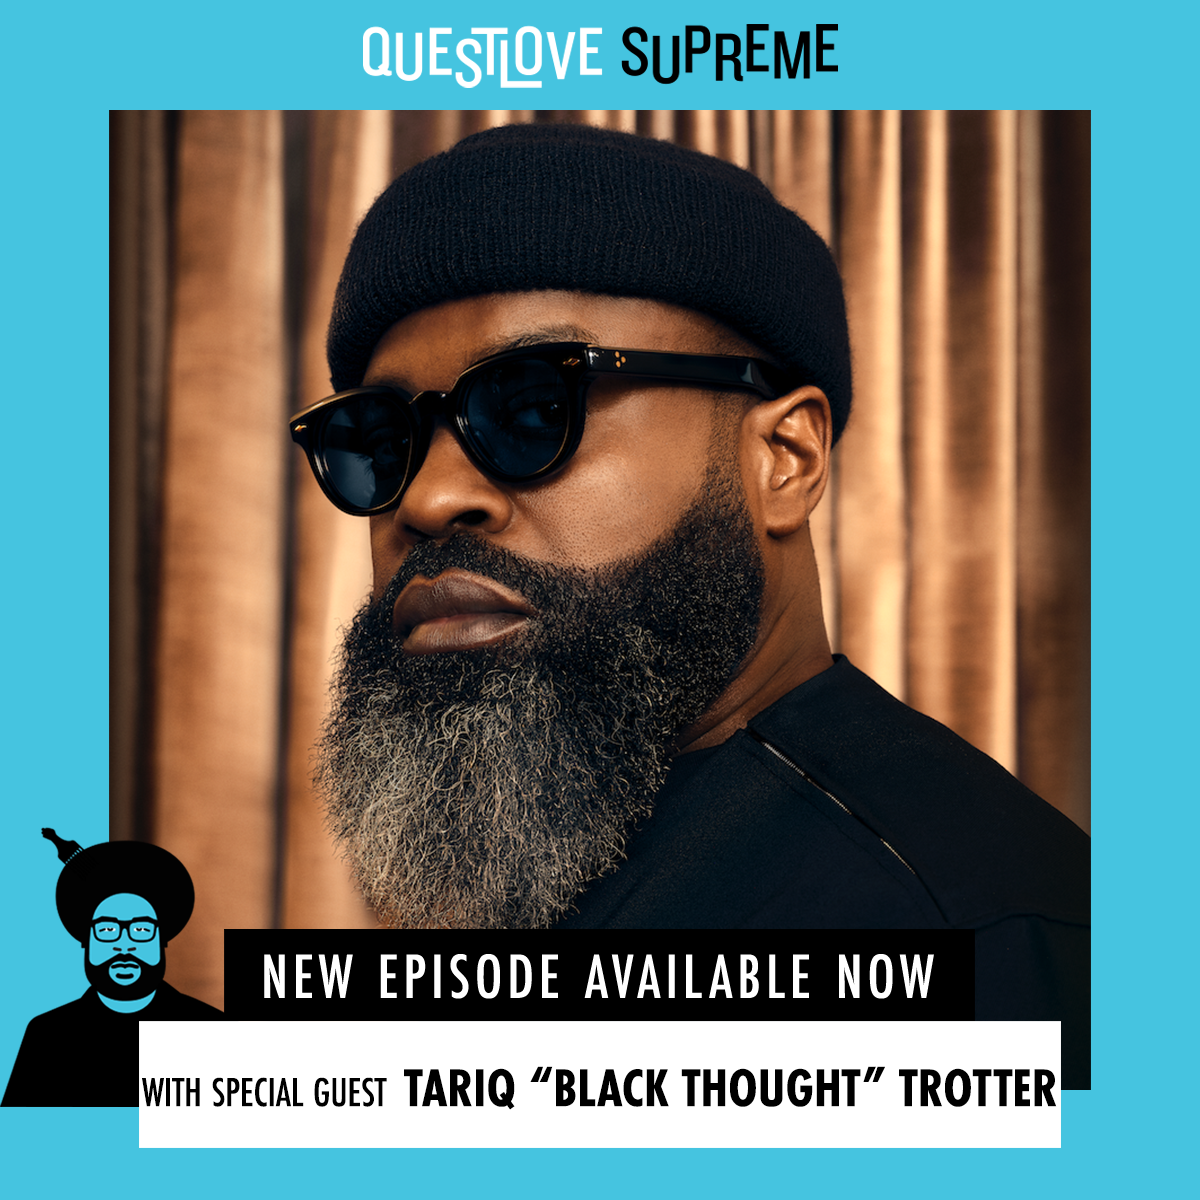 Tariq "Black Thought" Trotter